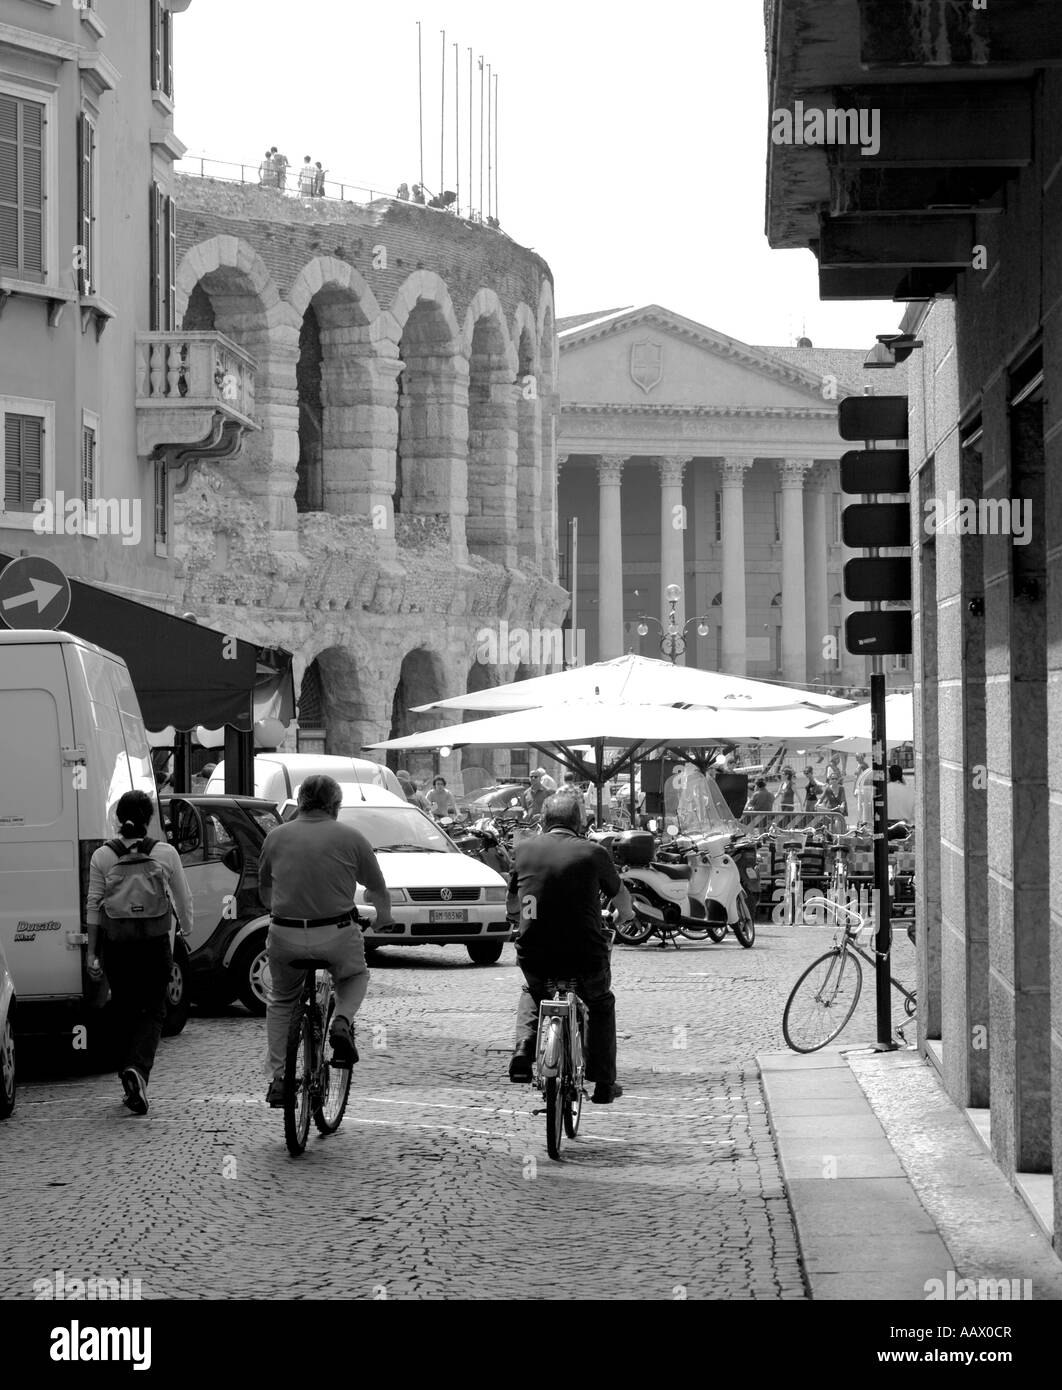 Cyclistes sur la Via Oberdan vers l'arène romaine dans la Piazza Bra Vérone Italie Banque D'Images